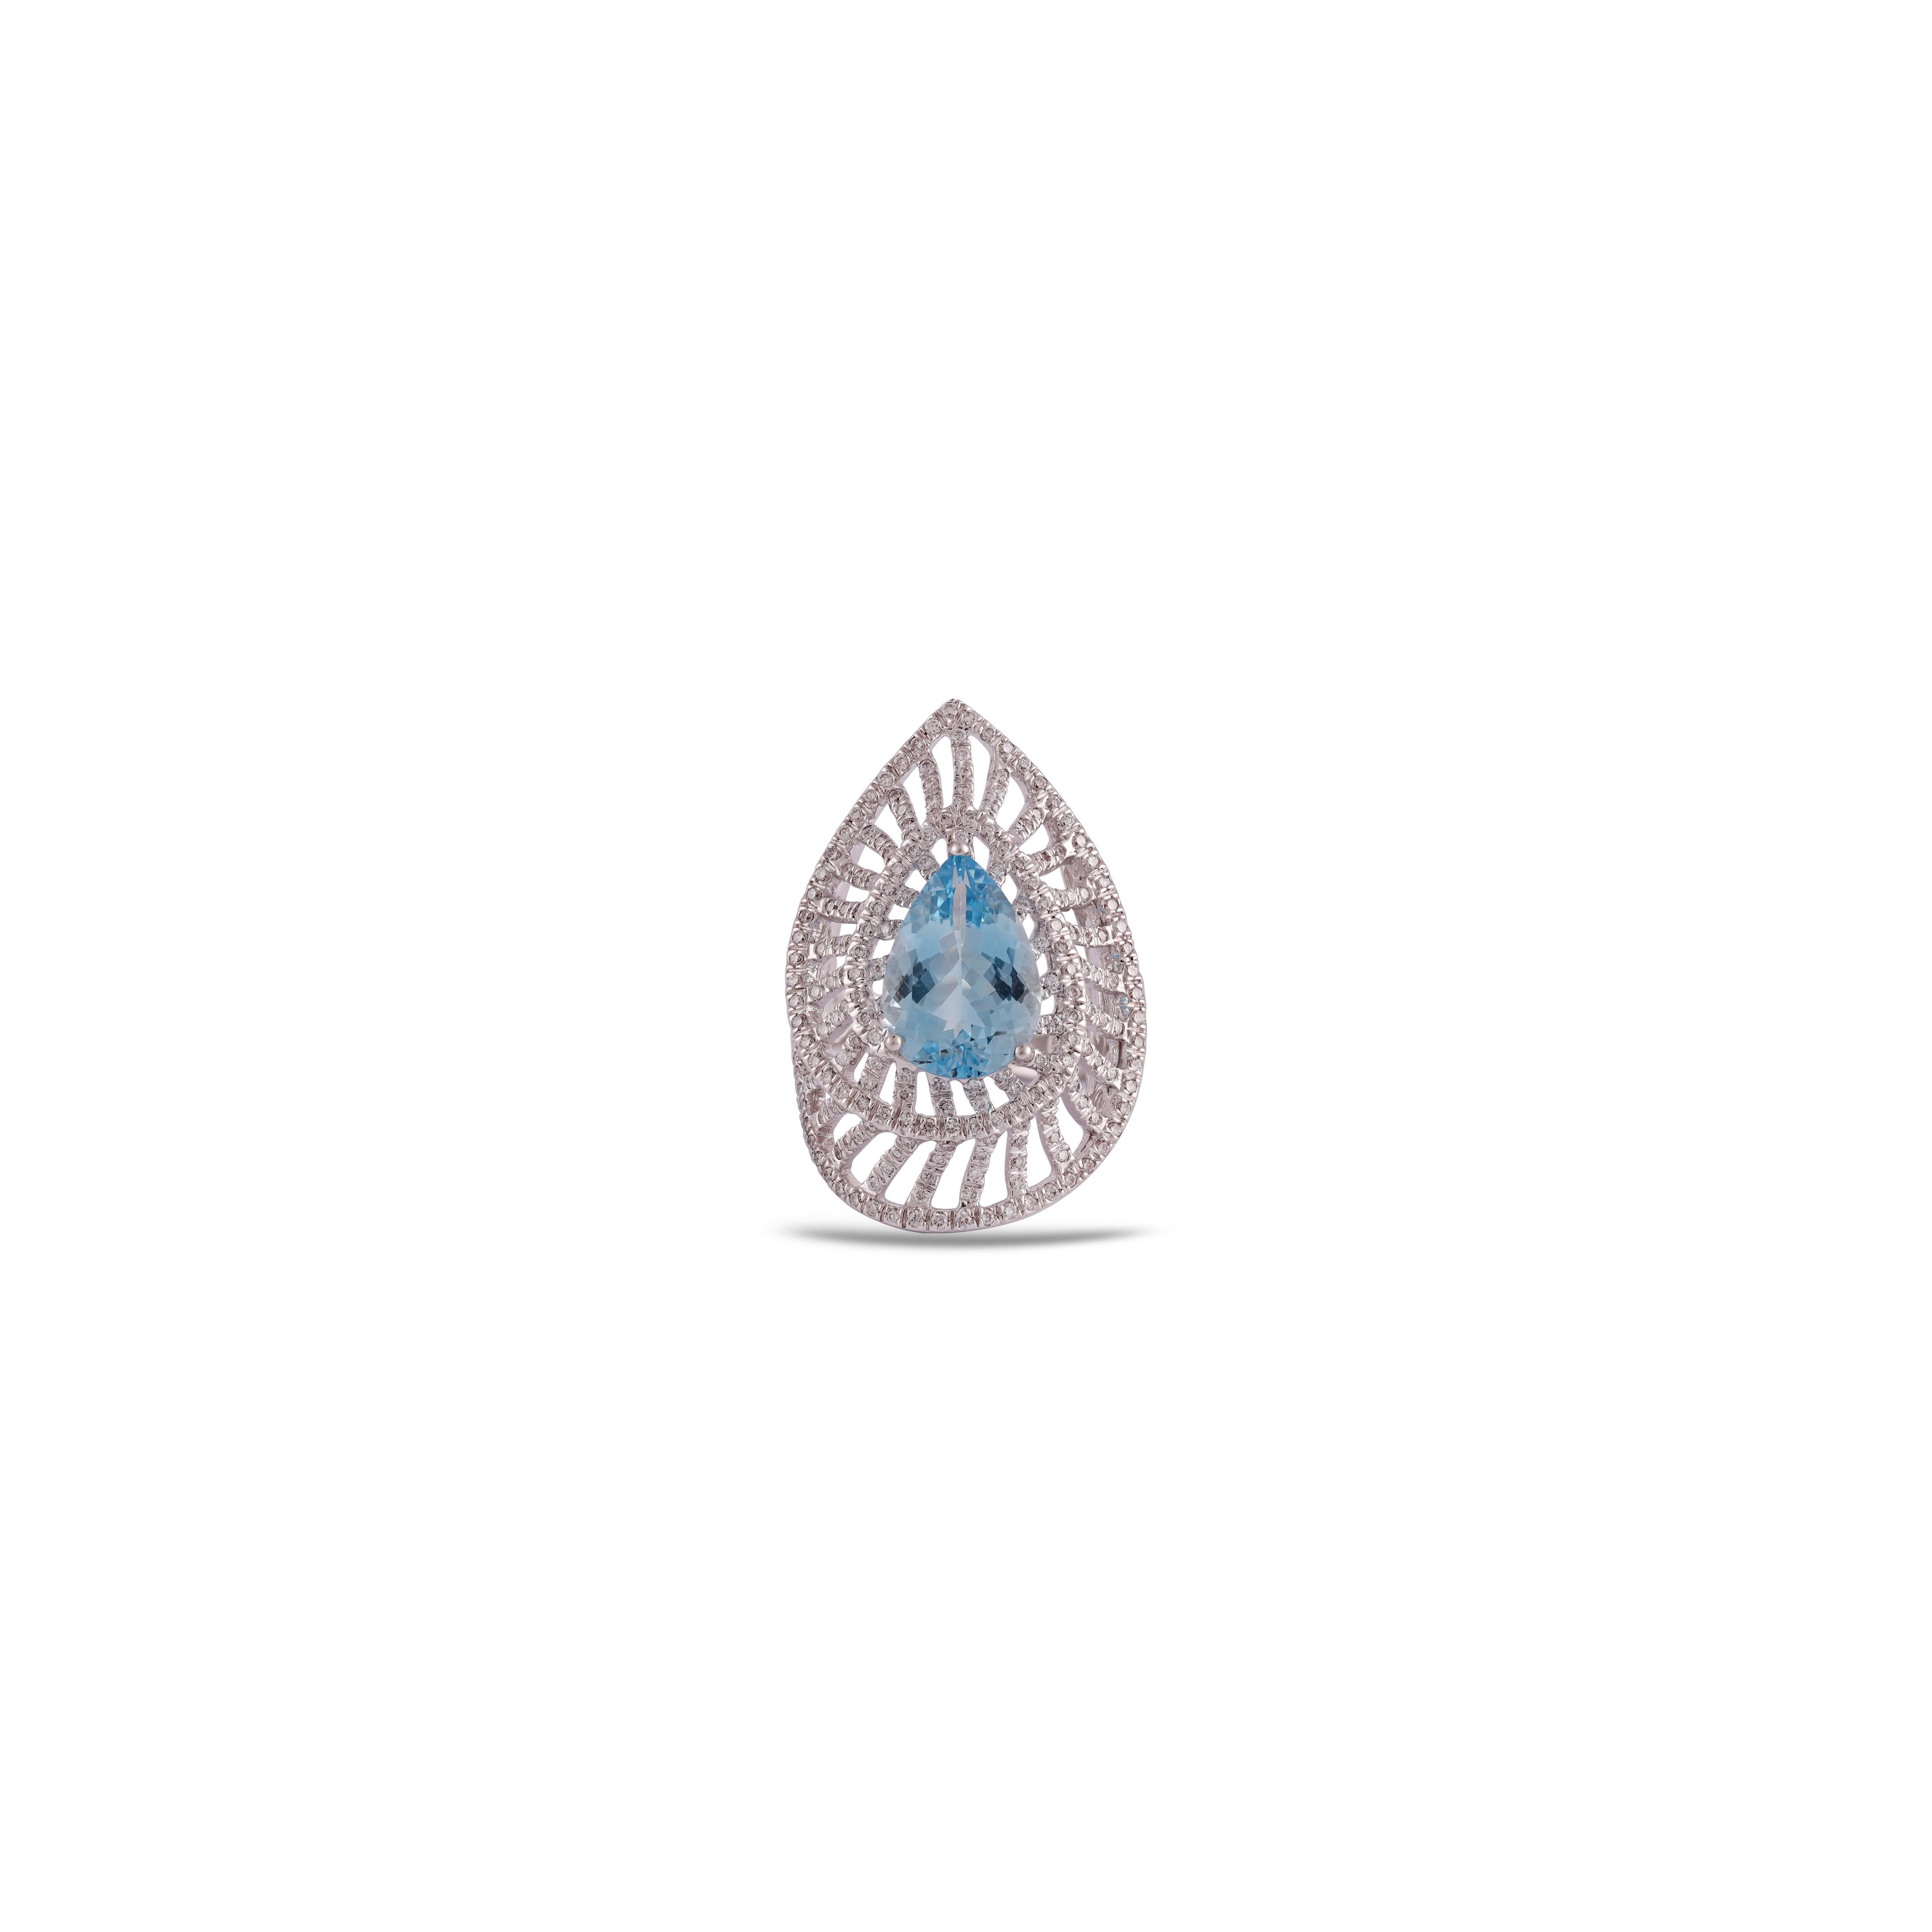 Dieser elegante Aquamarin- und Diamantring aus 18-karätigem Weißgold zeichnet sich durch eine hohe Qualität aus.  Aquamarin 3,71 Karat mit 287 Diamanten 1,27 Karat.
Der gesamte Ring ist aus 18k Weißgold gefertigt.
 Es ist ein klassischer Ring. 